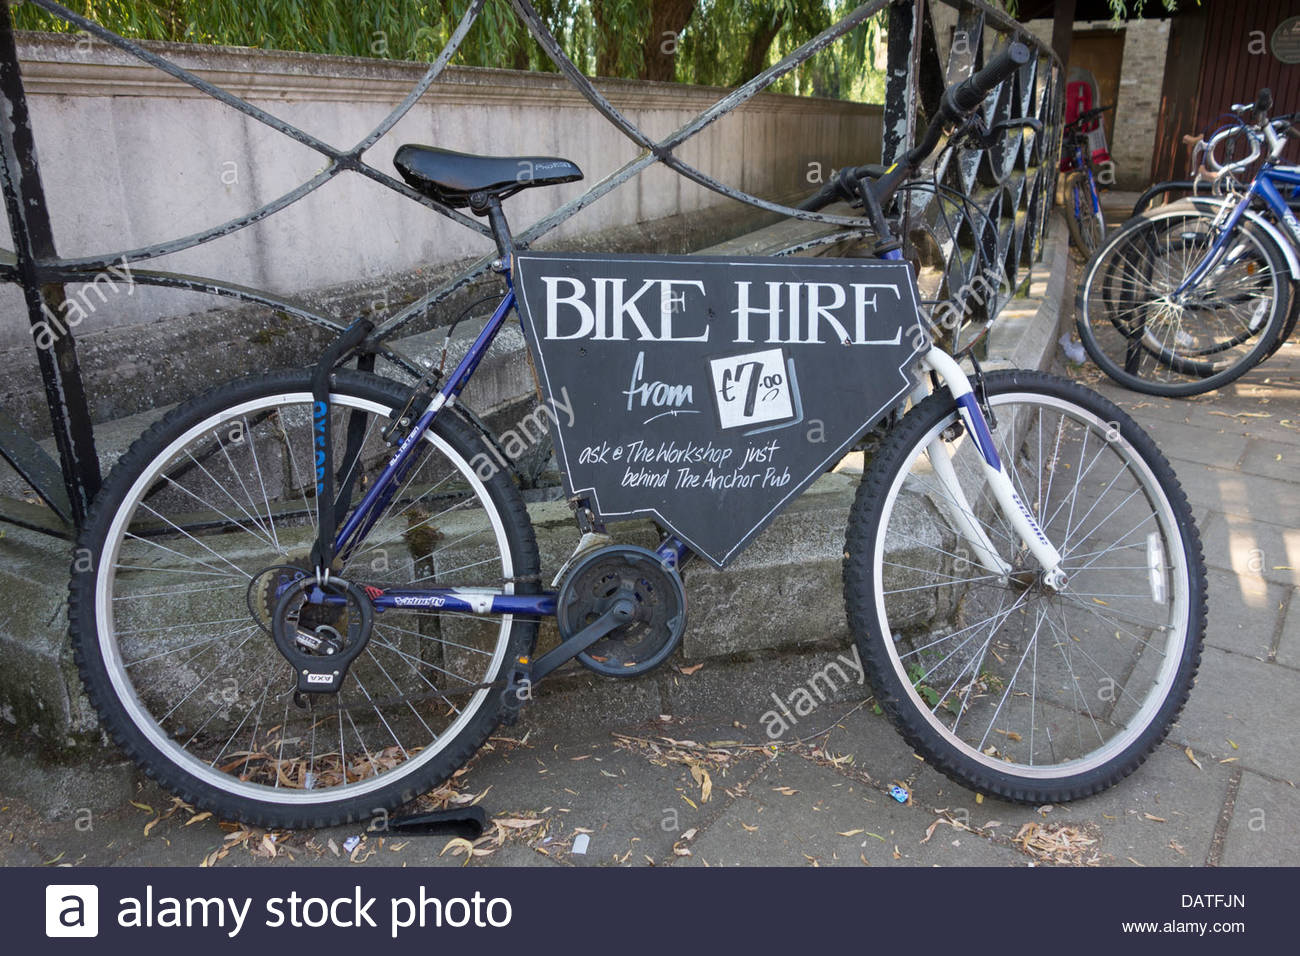 cambridge used bike